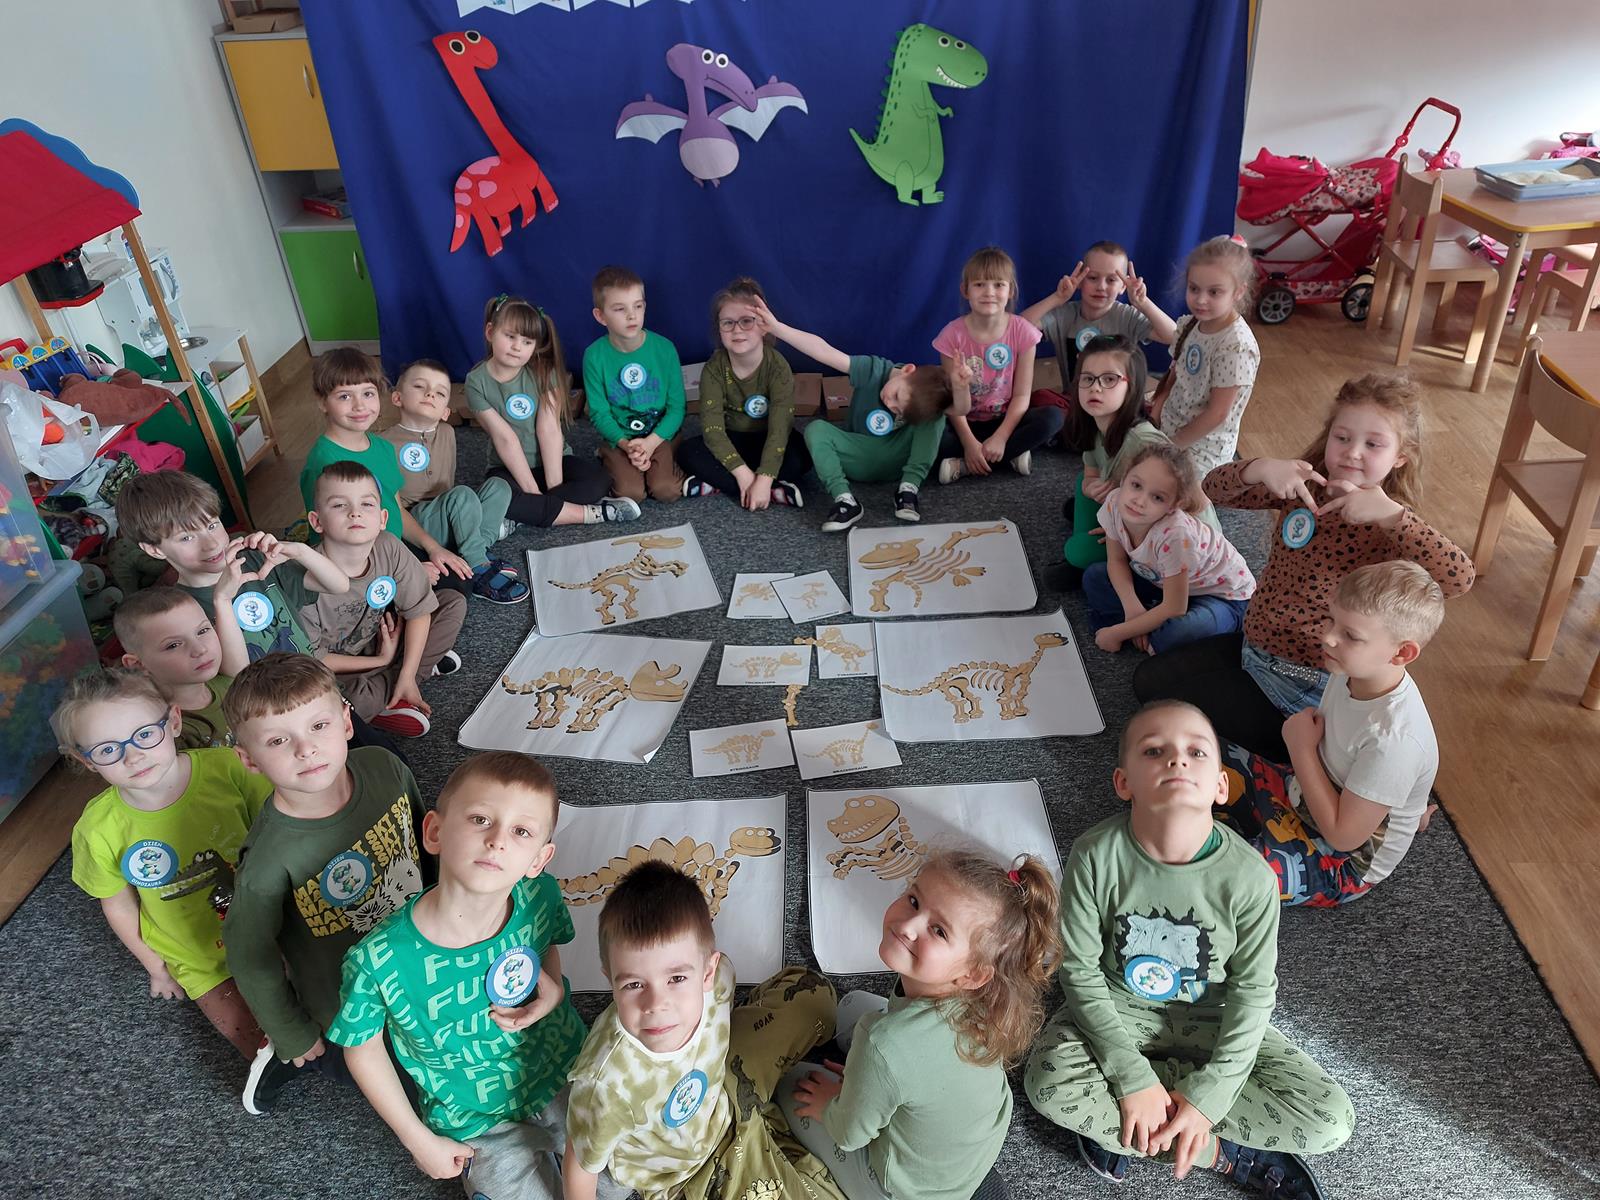 Dzieci siedzą w kole na dywanie, między nimi leżą ułożone szkielety dinozaurów.